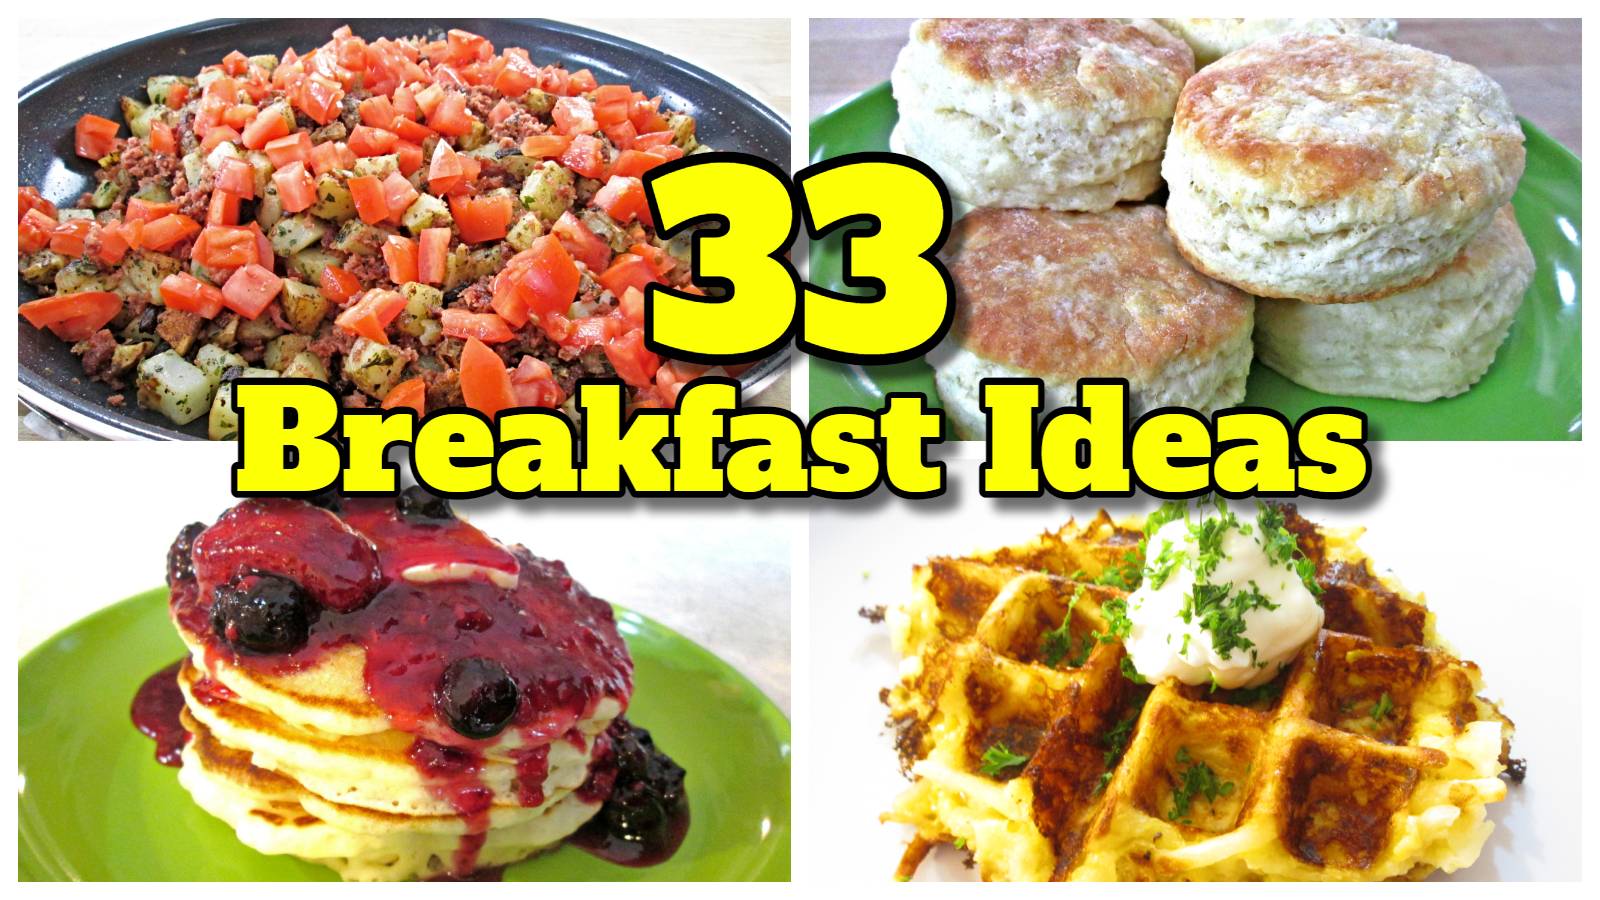 Over 30 Breakfast Ideas - Poor Man's Gourmet Kitchen